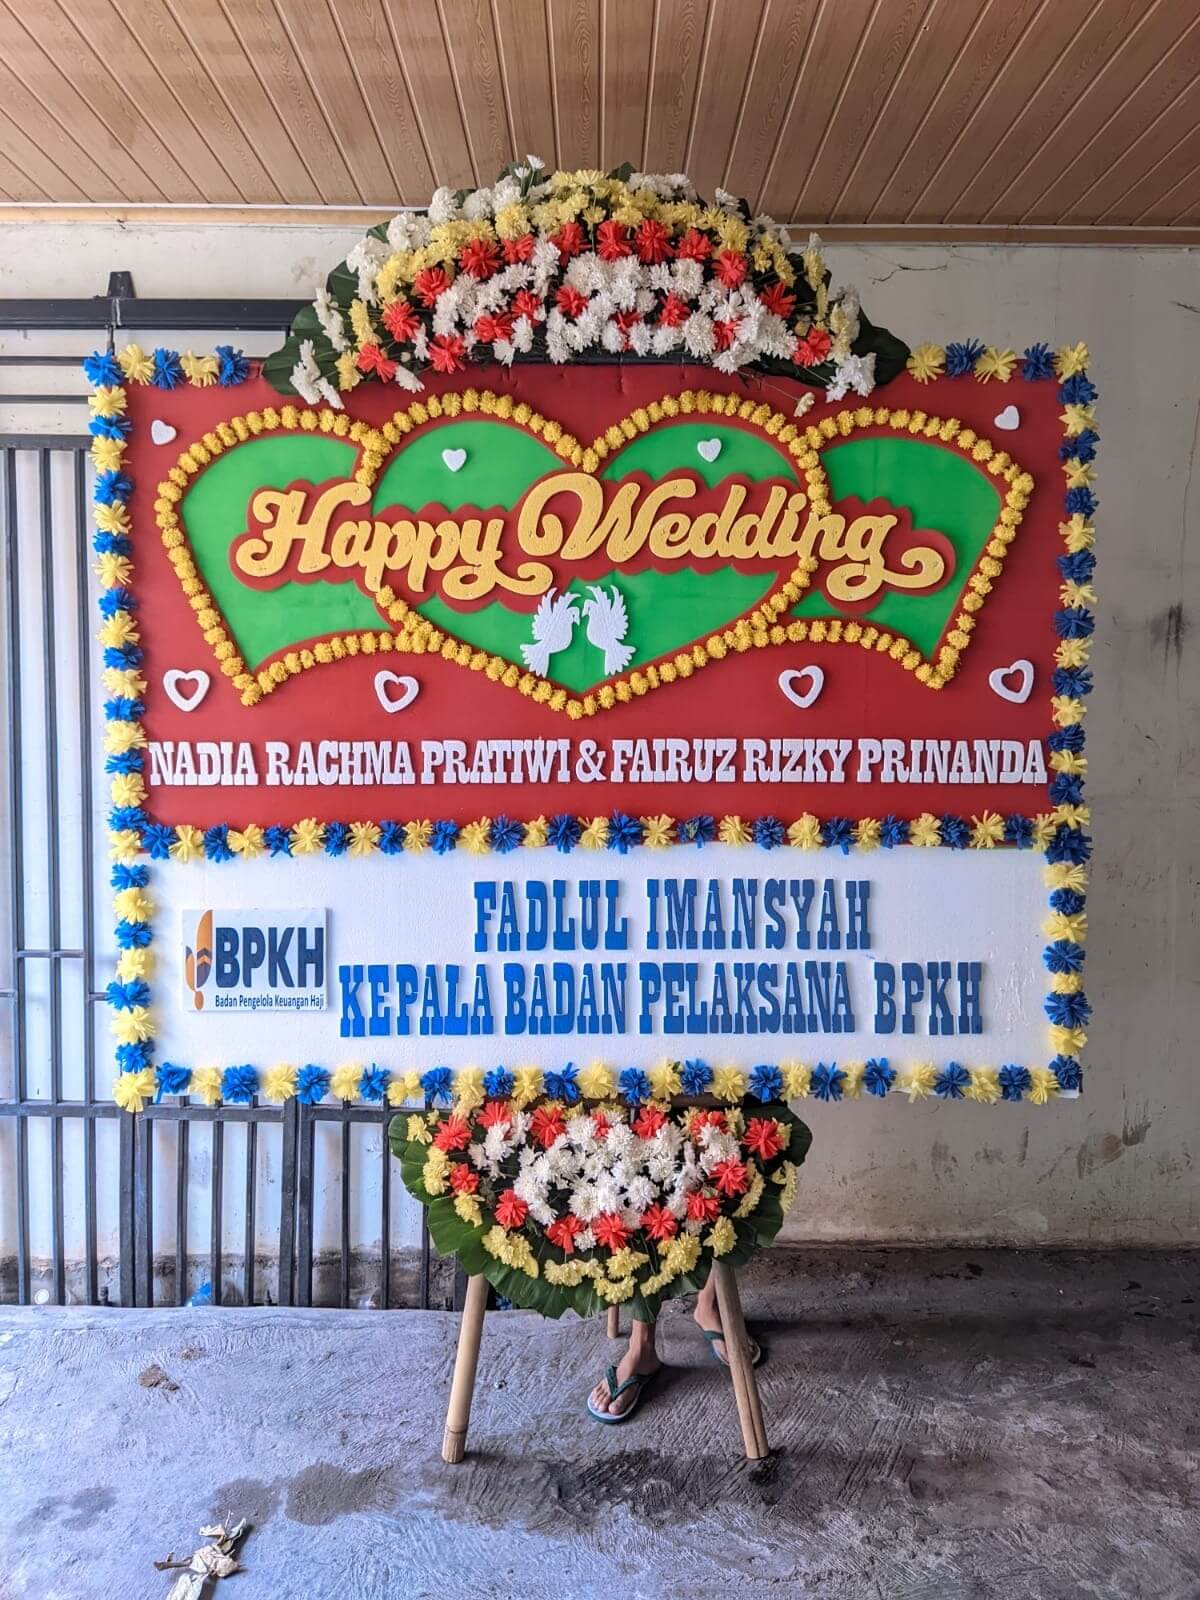 Toko Bunga Pondok Melati: Pilihan Terbaik Bunga Segar di Bekasi